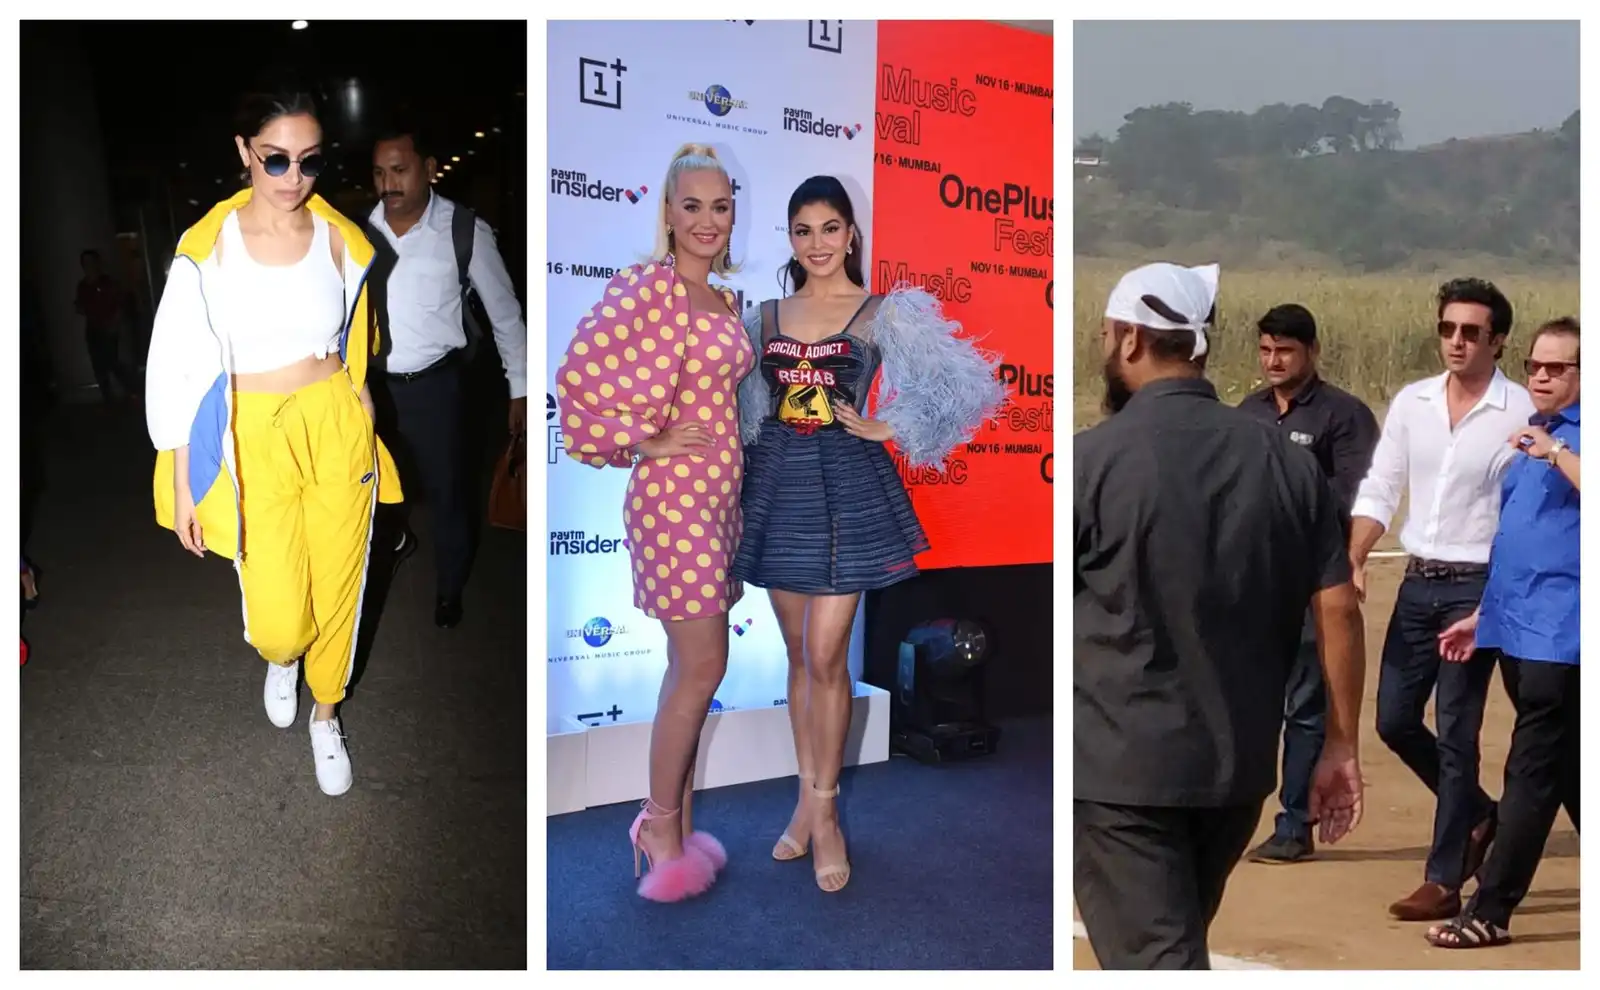 Spotted: दीपिका पादुकोण ने अपने फैशन से बढाया एअरपोर्ट का तापमान, हॉलीवुड सेलेब केटी पेरी के साथ जैकलीन!